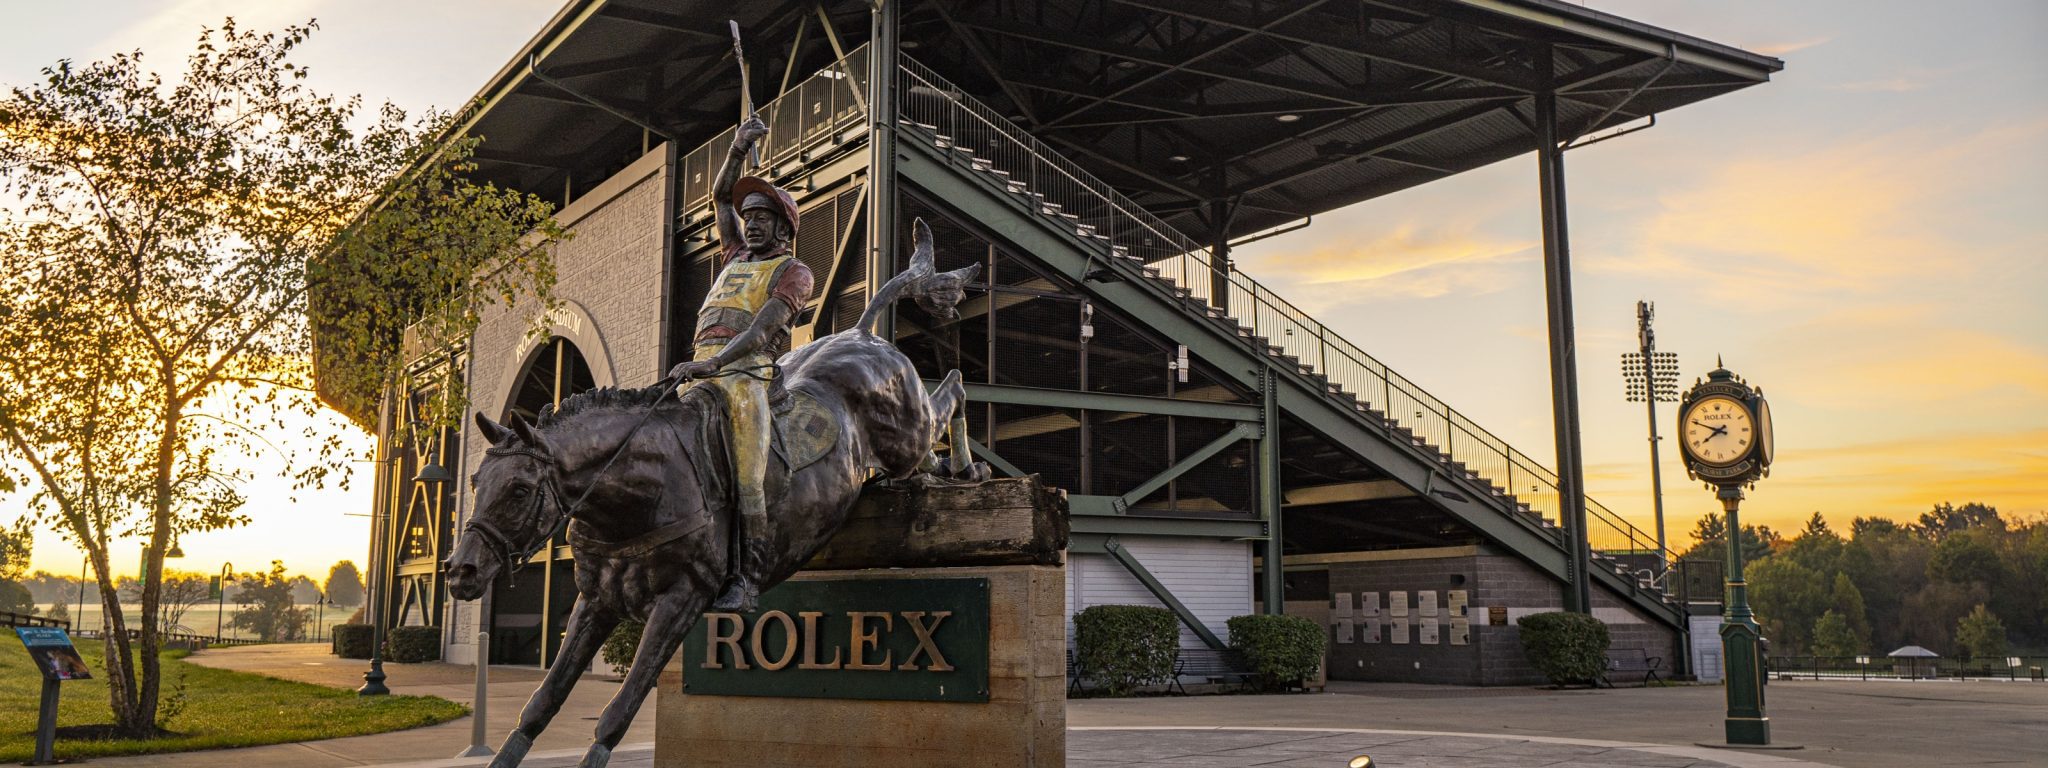 Rolex arena facilities